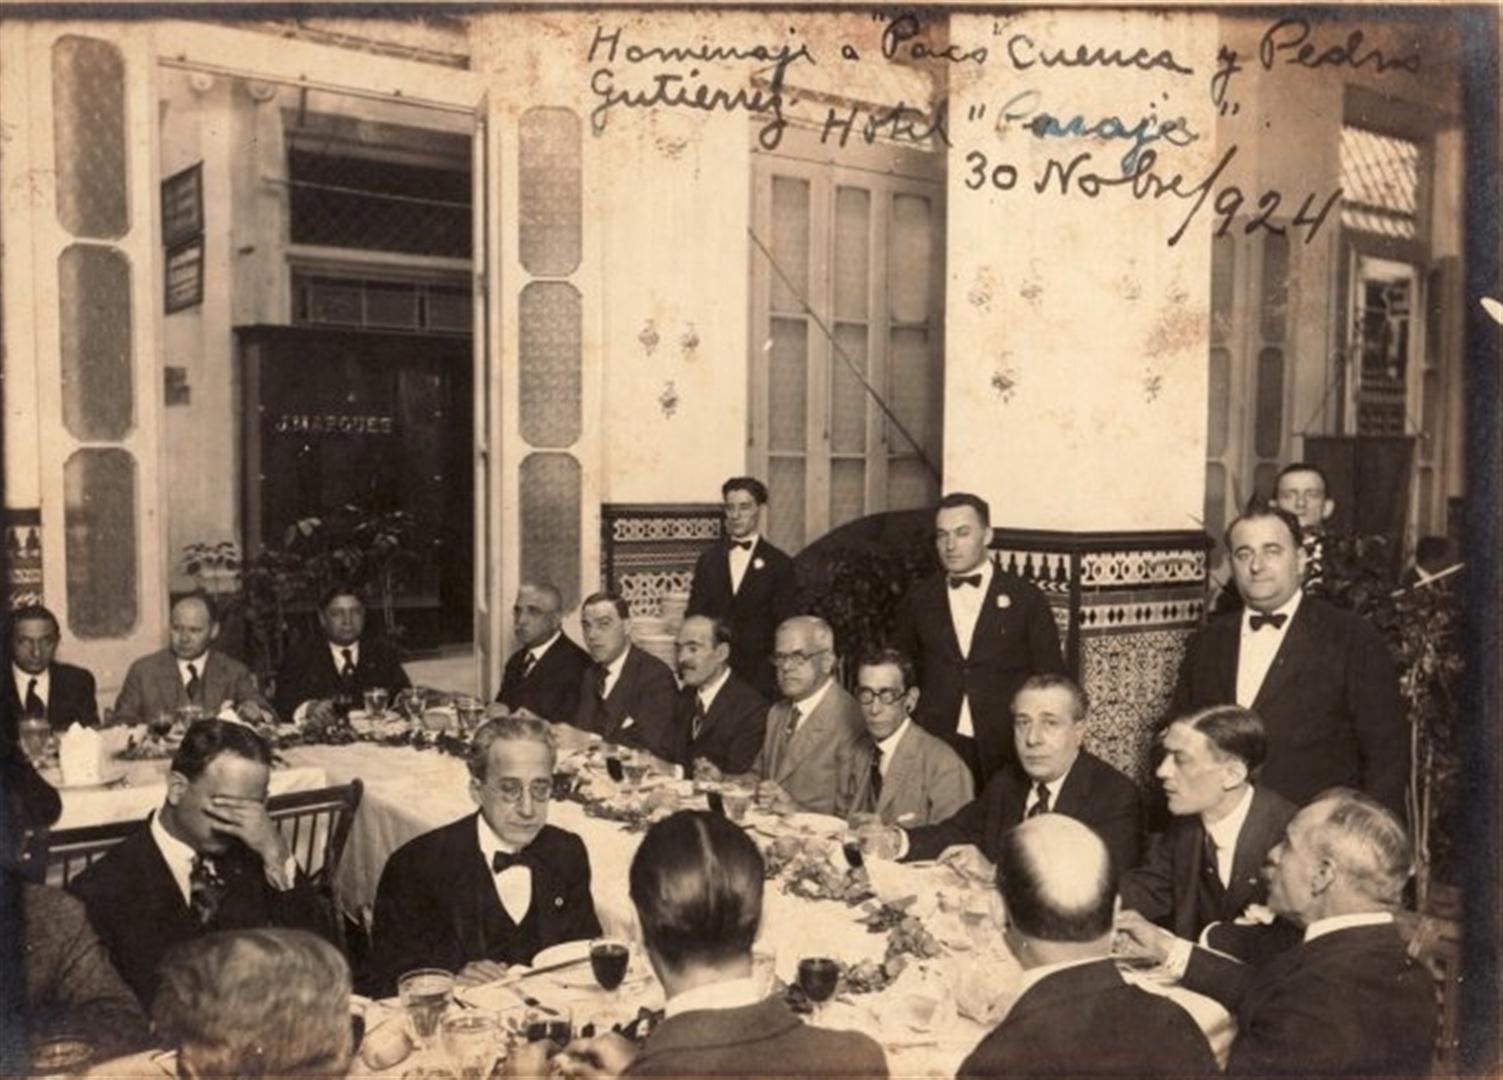 Zócalo de azulejos sevillanos en el restaurante del hotel Pasaje. Fotografía tomada el 30 de noviembre de 1924, en una cena homenaje organizada por la Sociedad Andaluza de La Habana